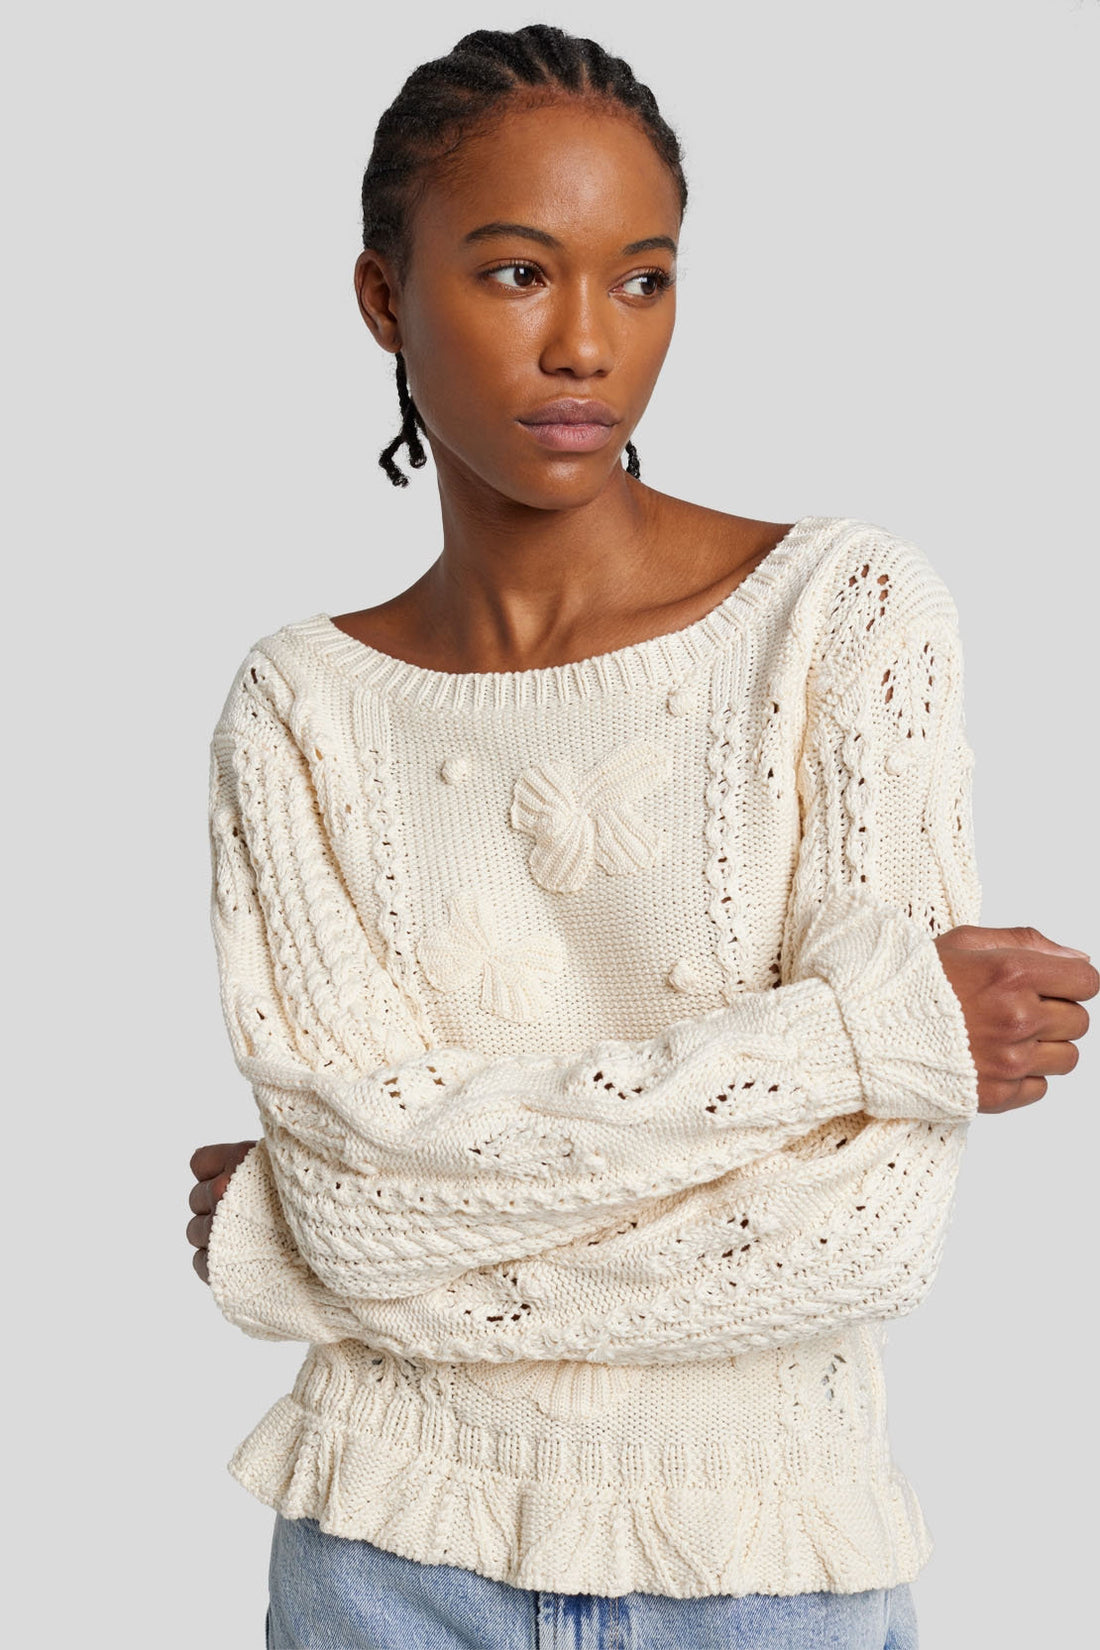 Bobble Sweater Cotton Cream_JSHL5480CR_CR_01